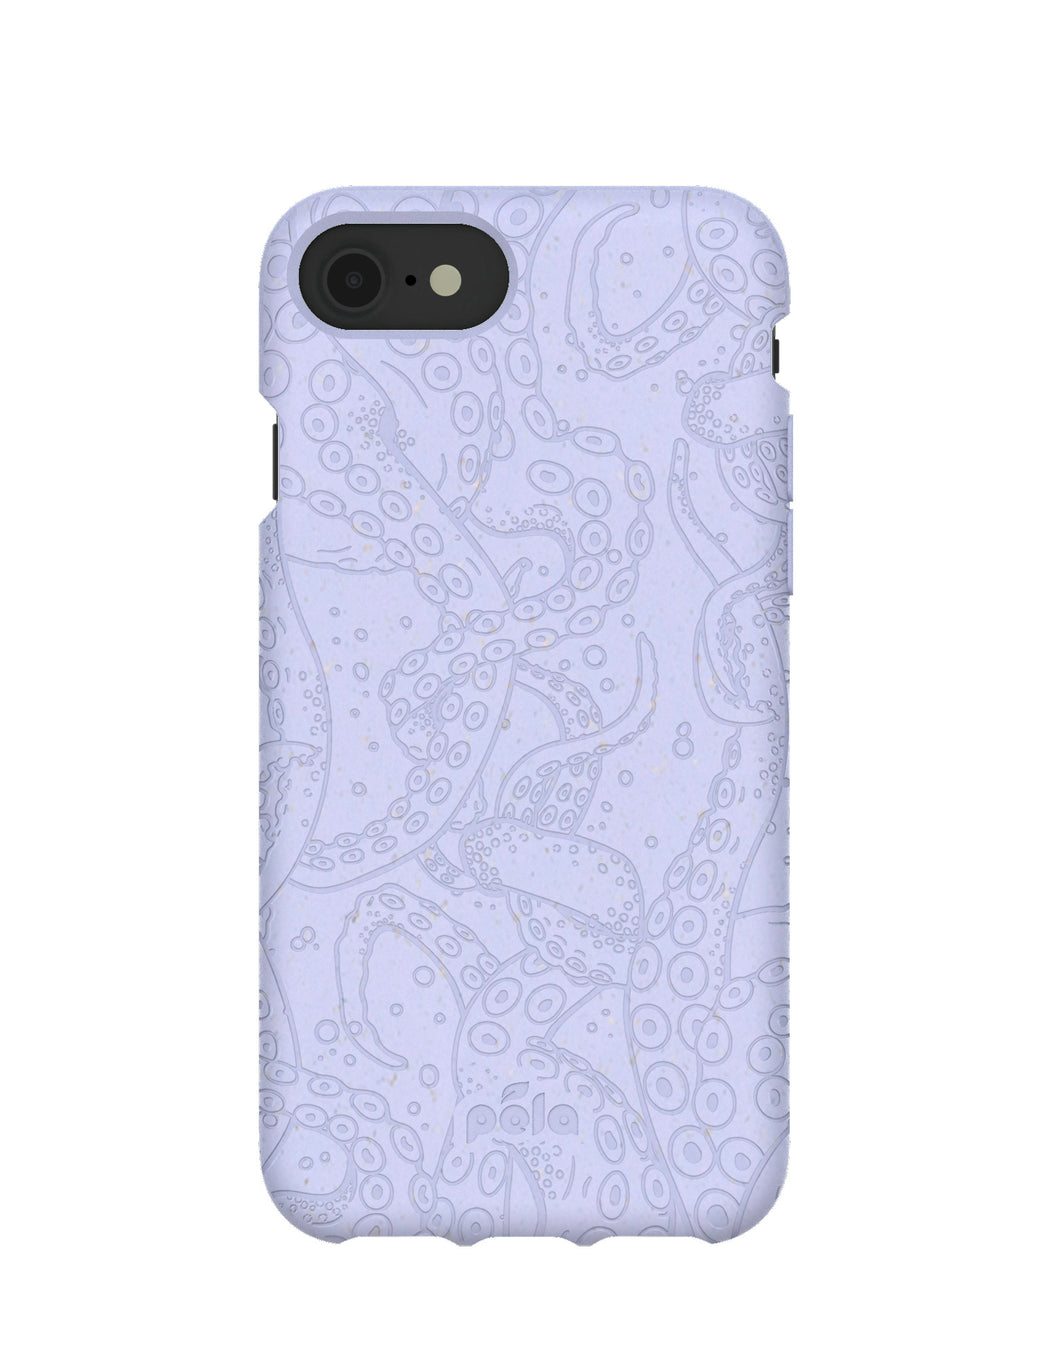 Lavender Sea Tentacles iPhone 6/6s/7/8/SE Case